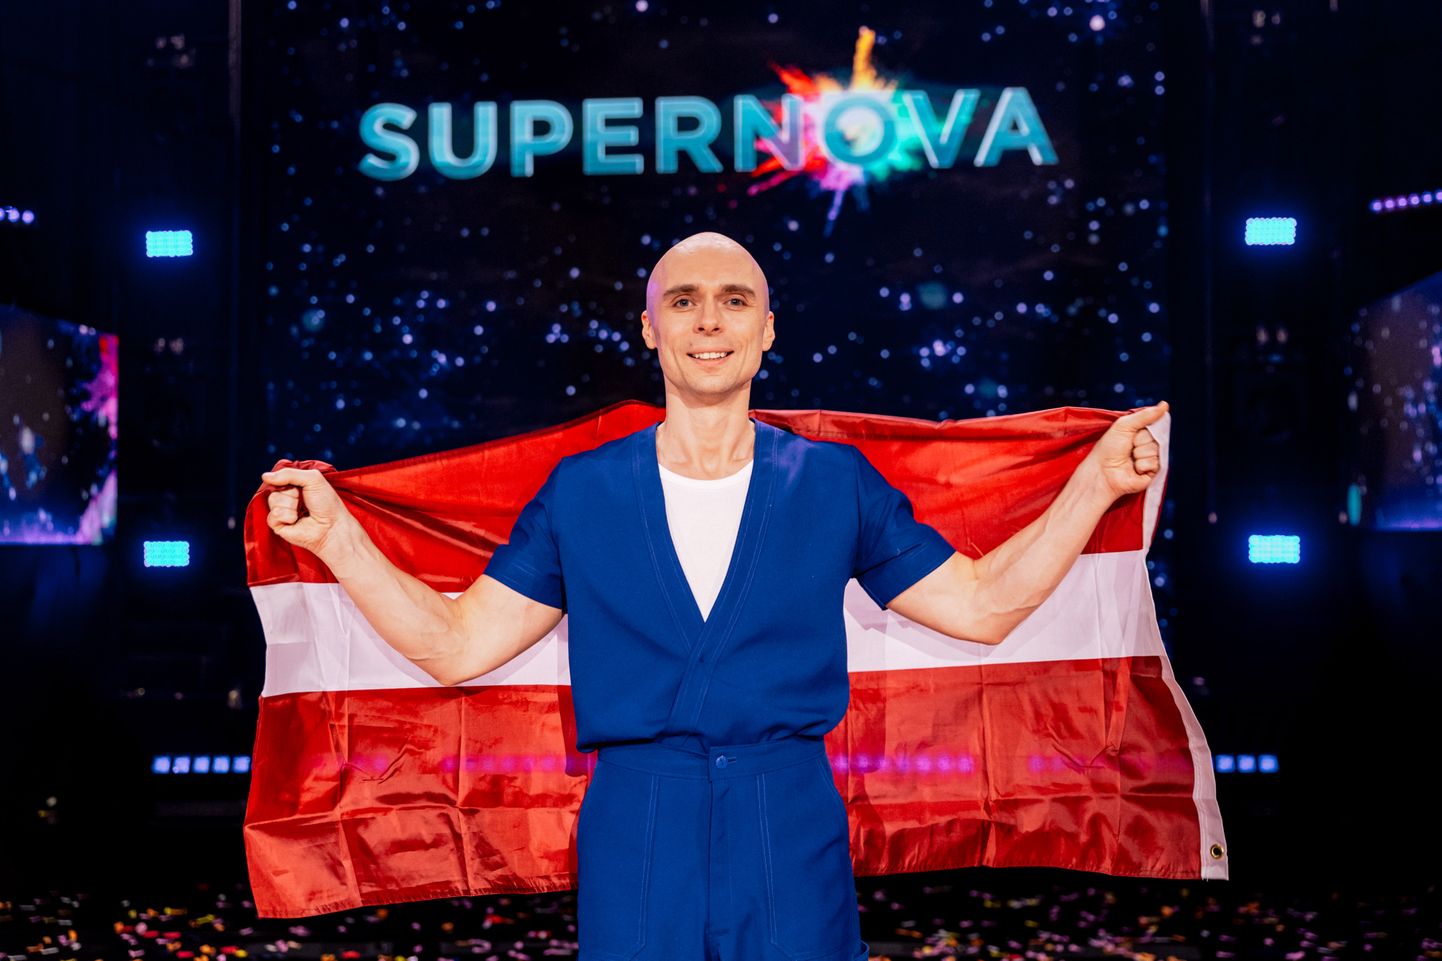 Mūziķis Dons pēc uzvaras Eirovīzijas nacionālās atlases konkursā "Supernova"